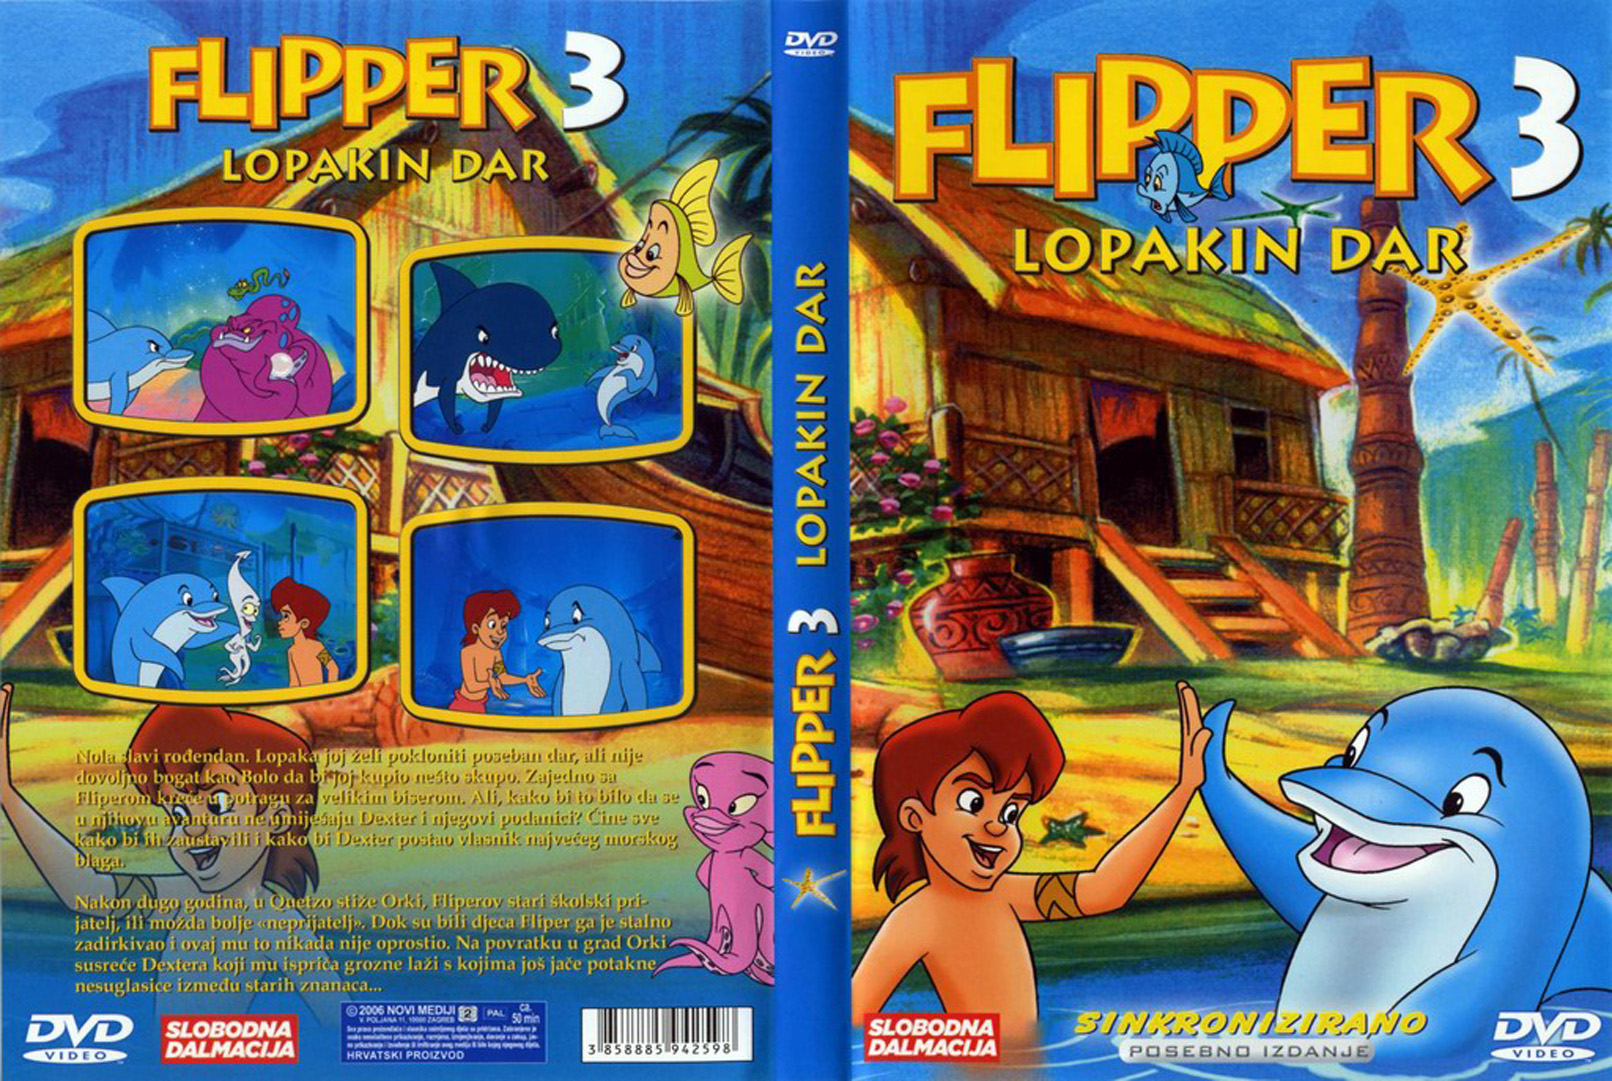 Click to view full size image -  DVD Cover - F - DVD - FLIPPER3.jpg - DVD - FLIPPER3.jpg